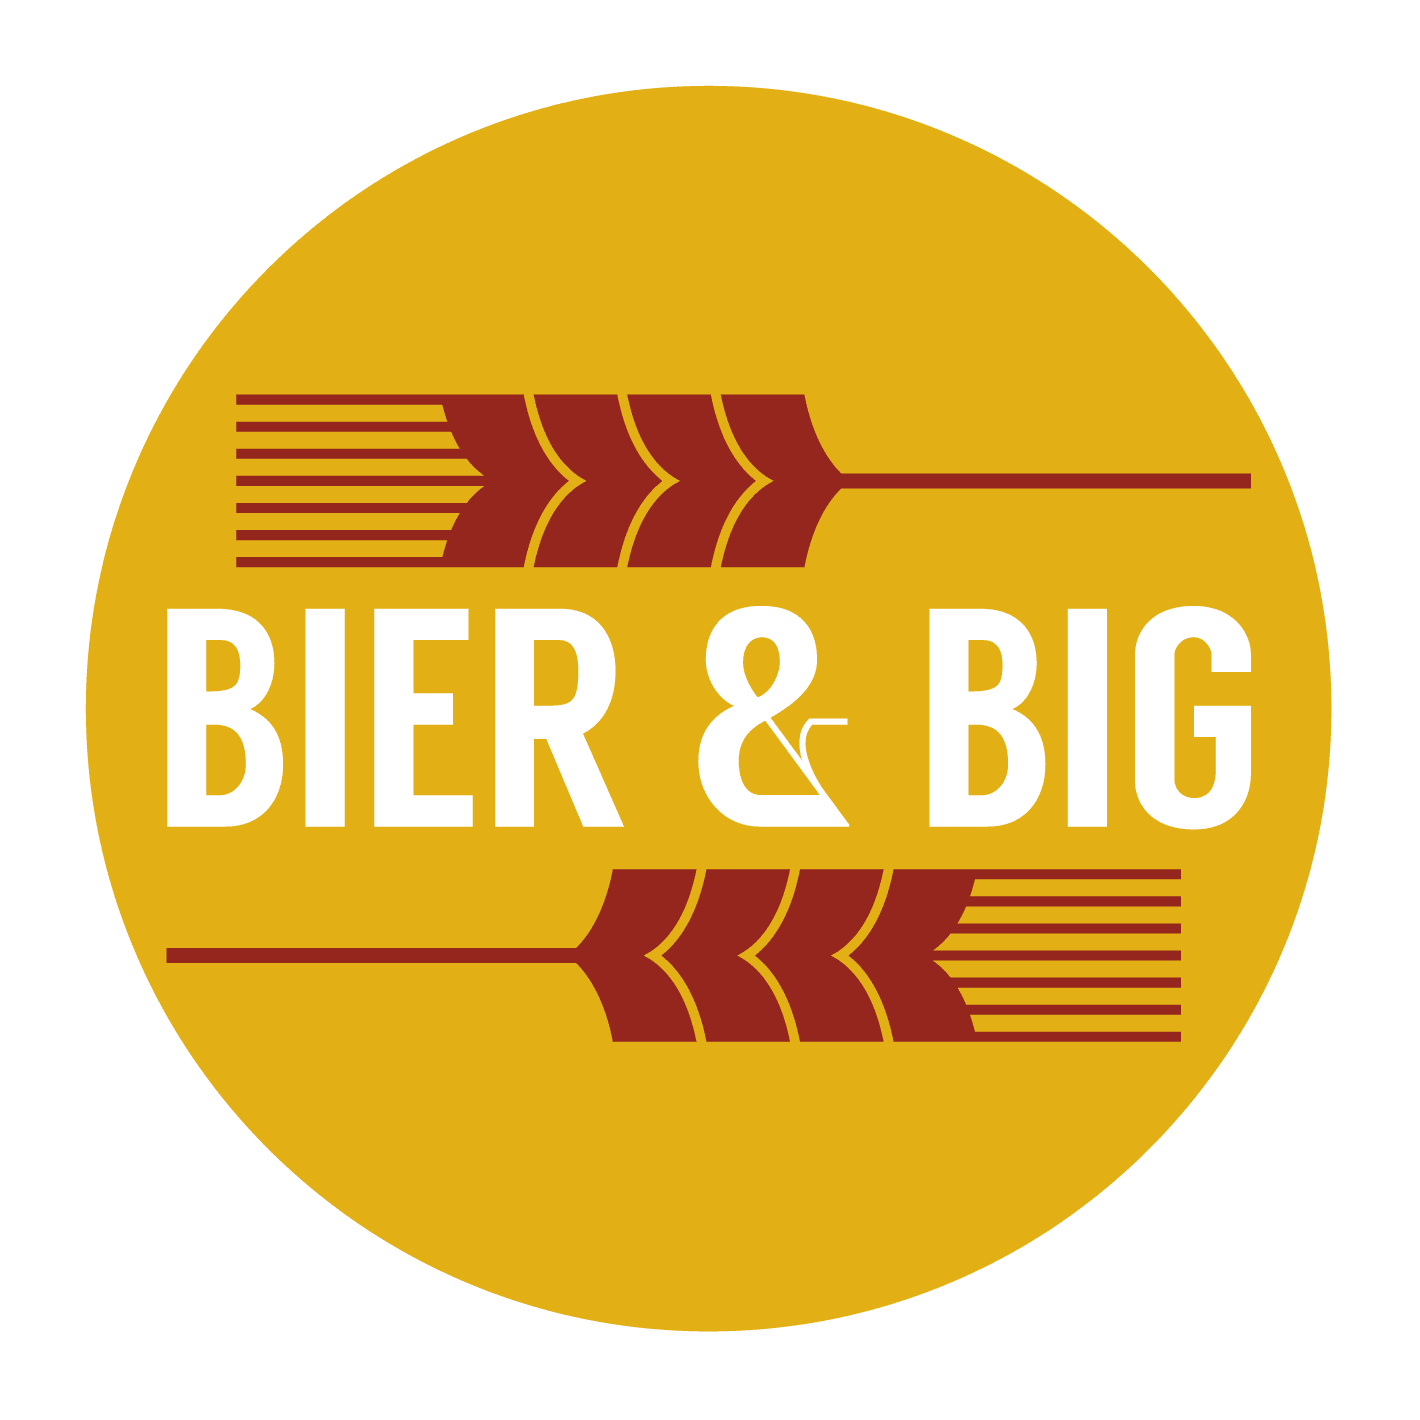 bier en big logo